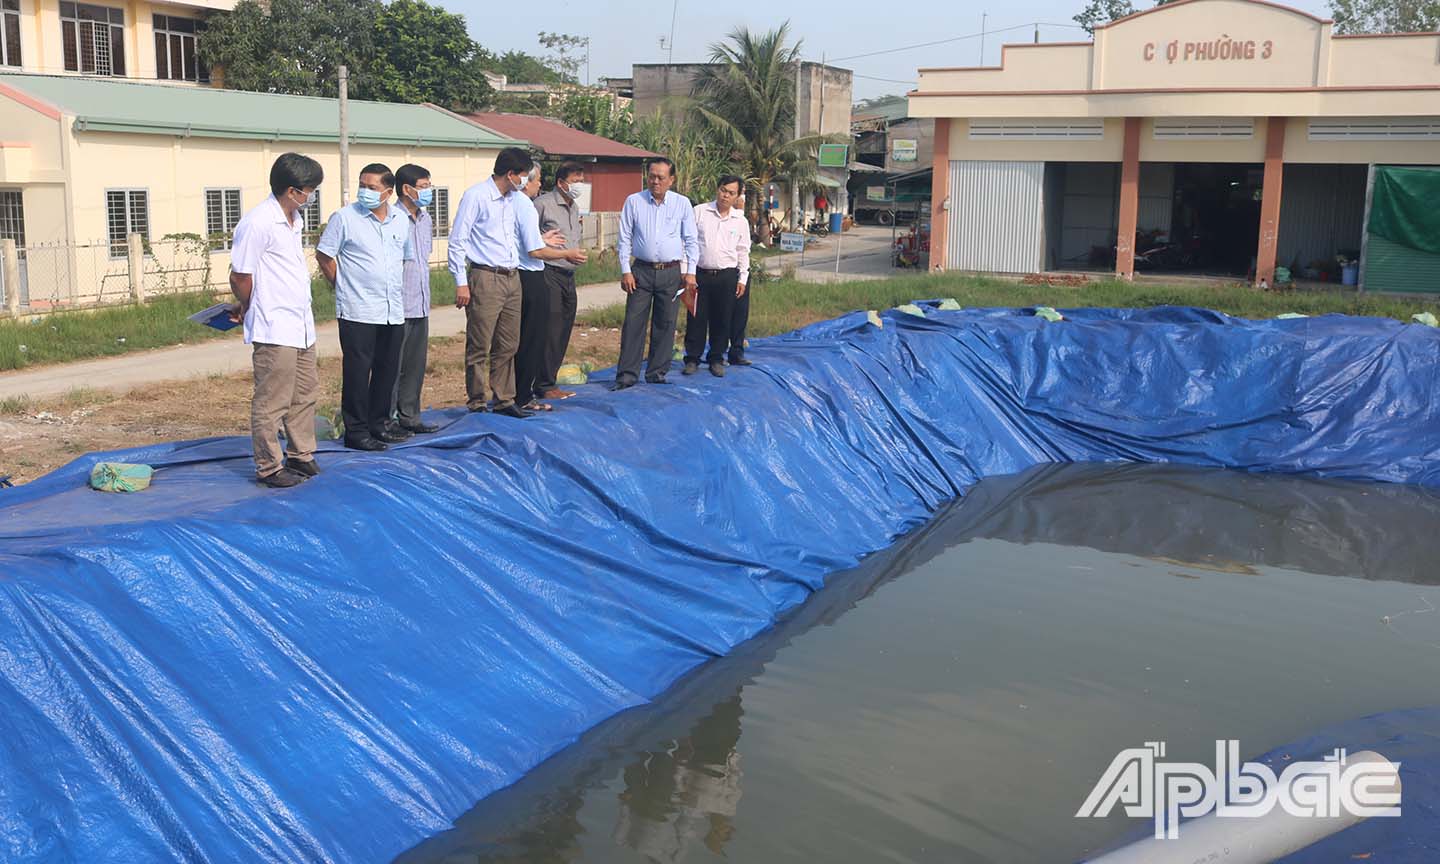 Đồng chí Lê Văn Nghĩa (thứ 2 từ phải sang) đến khảo sát ao bạt chứa nước ở phường 3, Thị xã Cai Lậy.